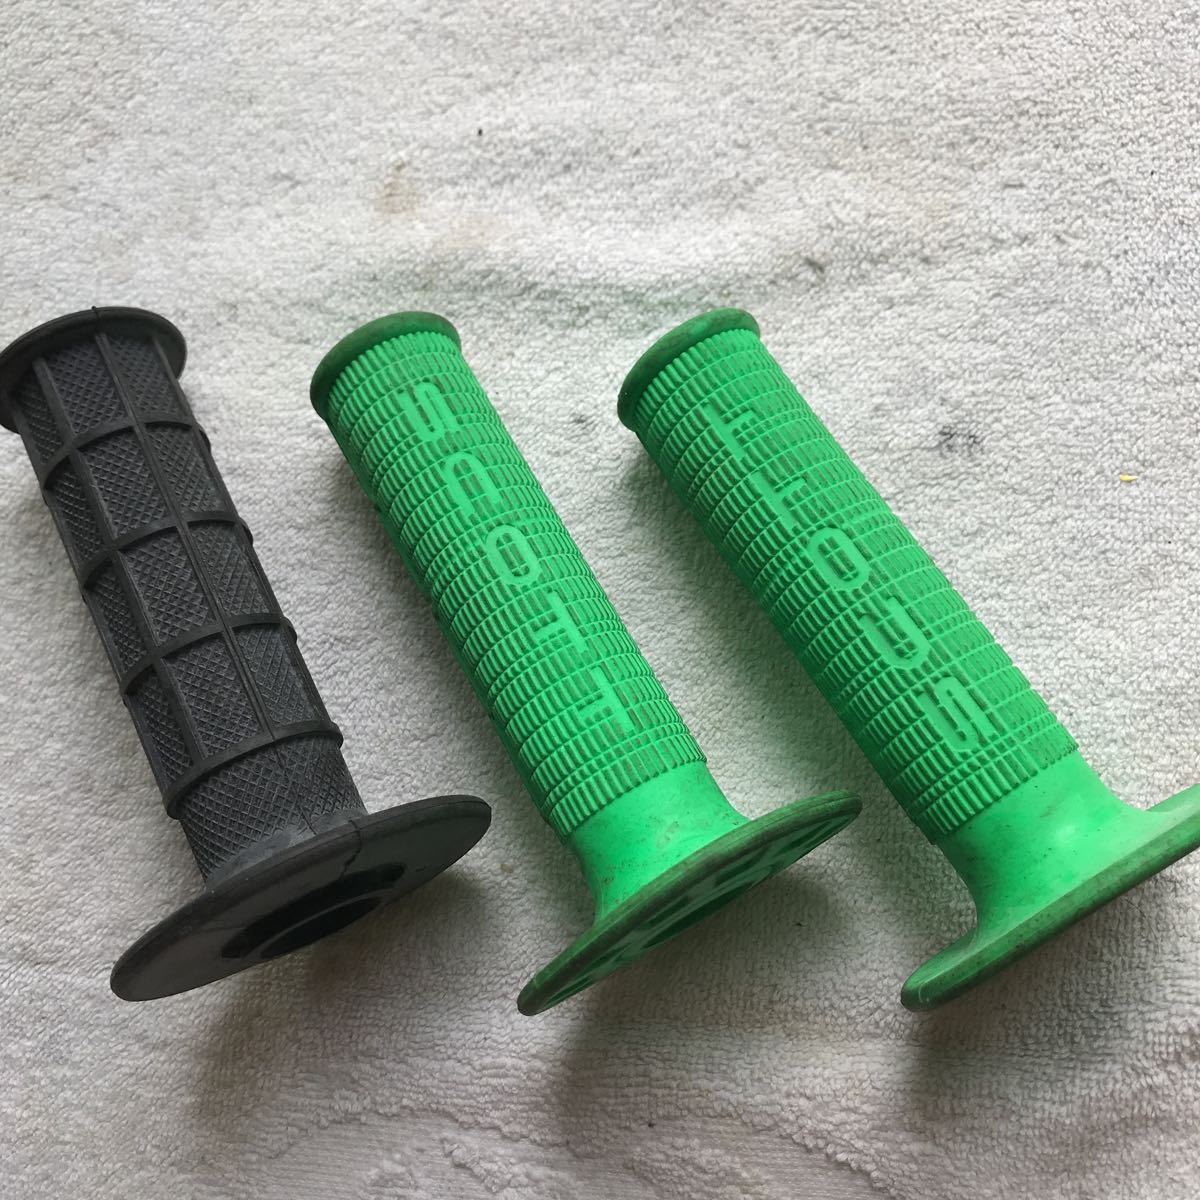  рукоятка SCOTT Scott зеленый зеленый левый правый, чёрный левая сторона ( сцепление сторона ) только, итого 3 шт. комплект мотокросс sa- для для бездорожья не использовался 